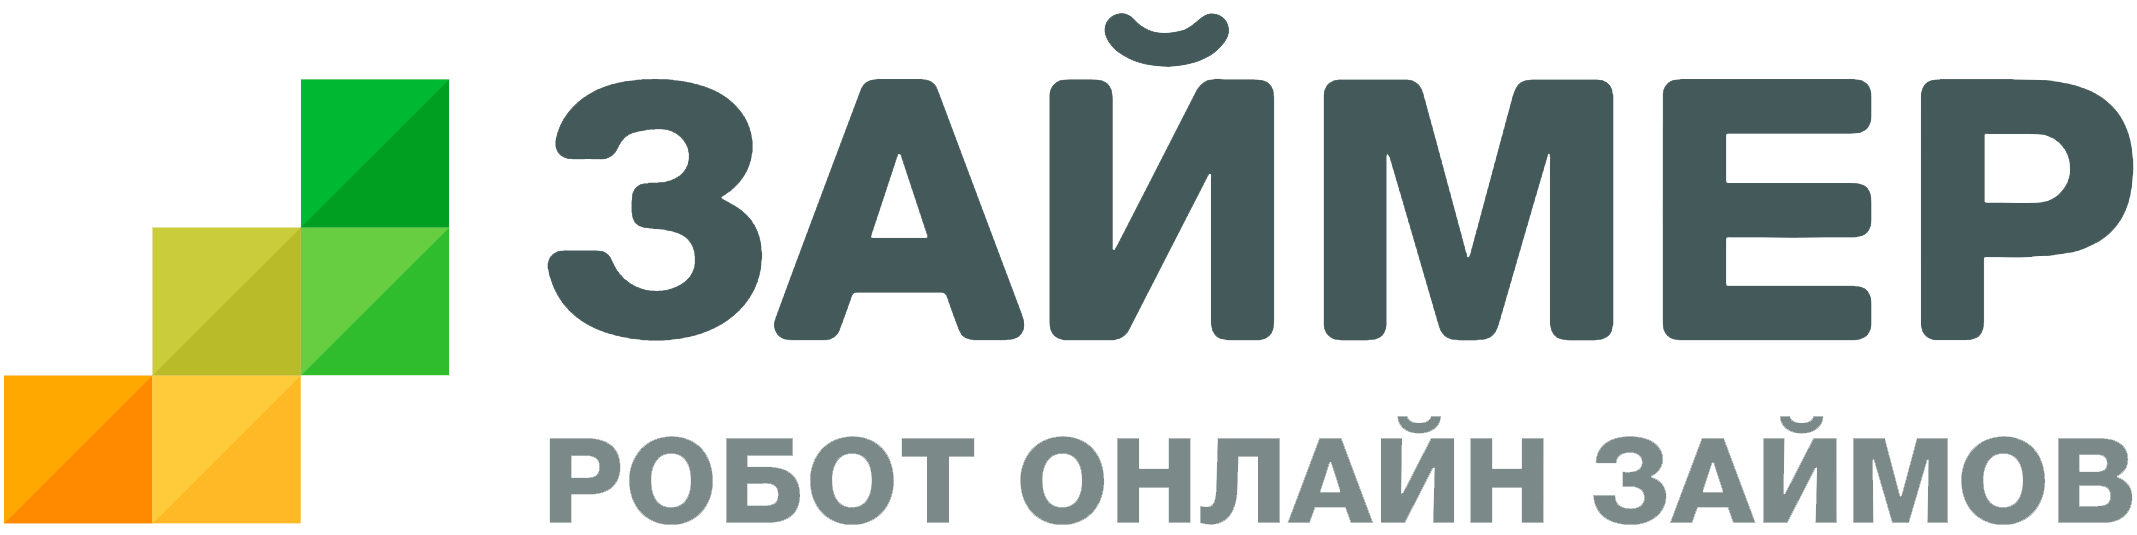 Логотип МФО Займер